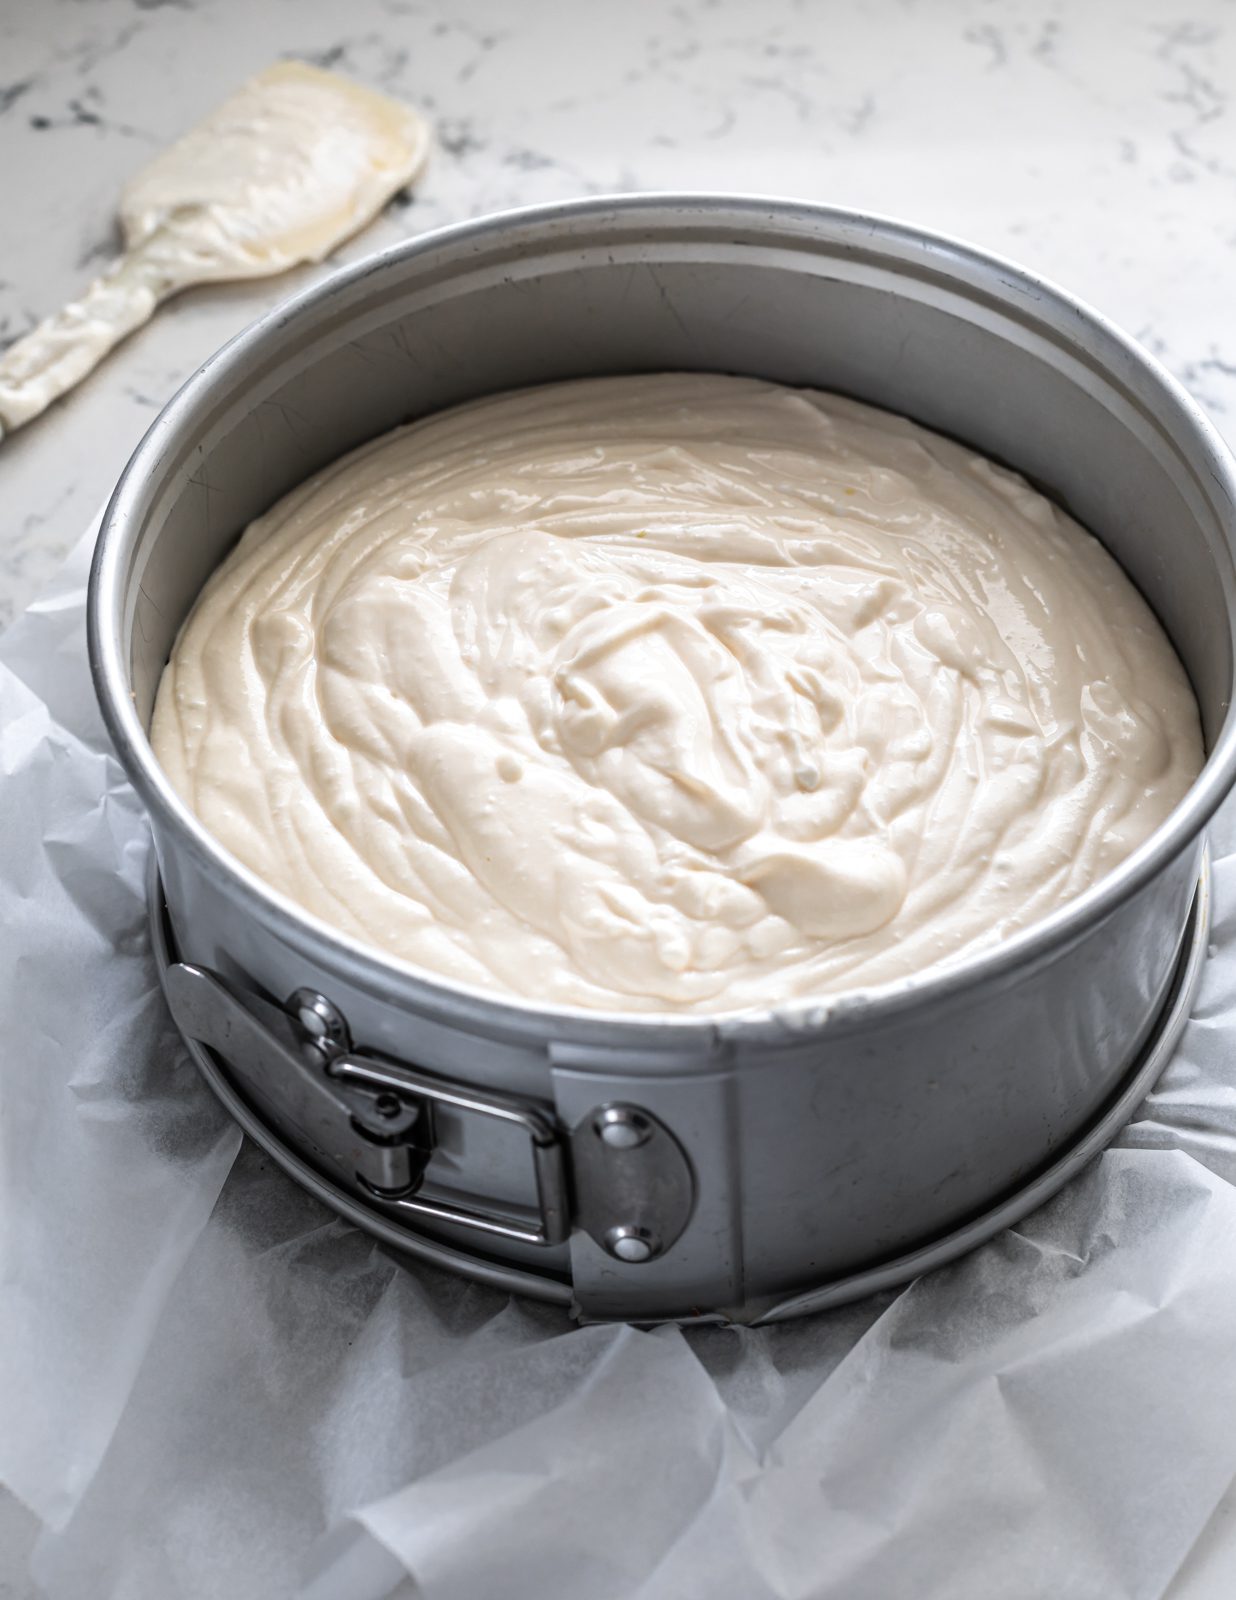 הכנת עוגת גבינה ללא קמח בתבנית קפיצית לפני האפייה-שני סנדרס